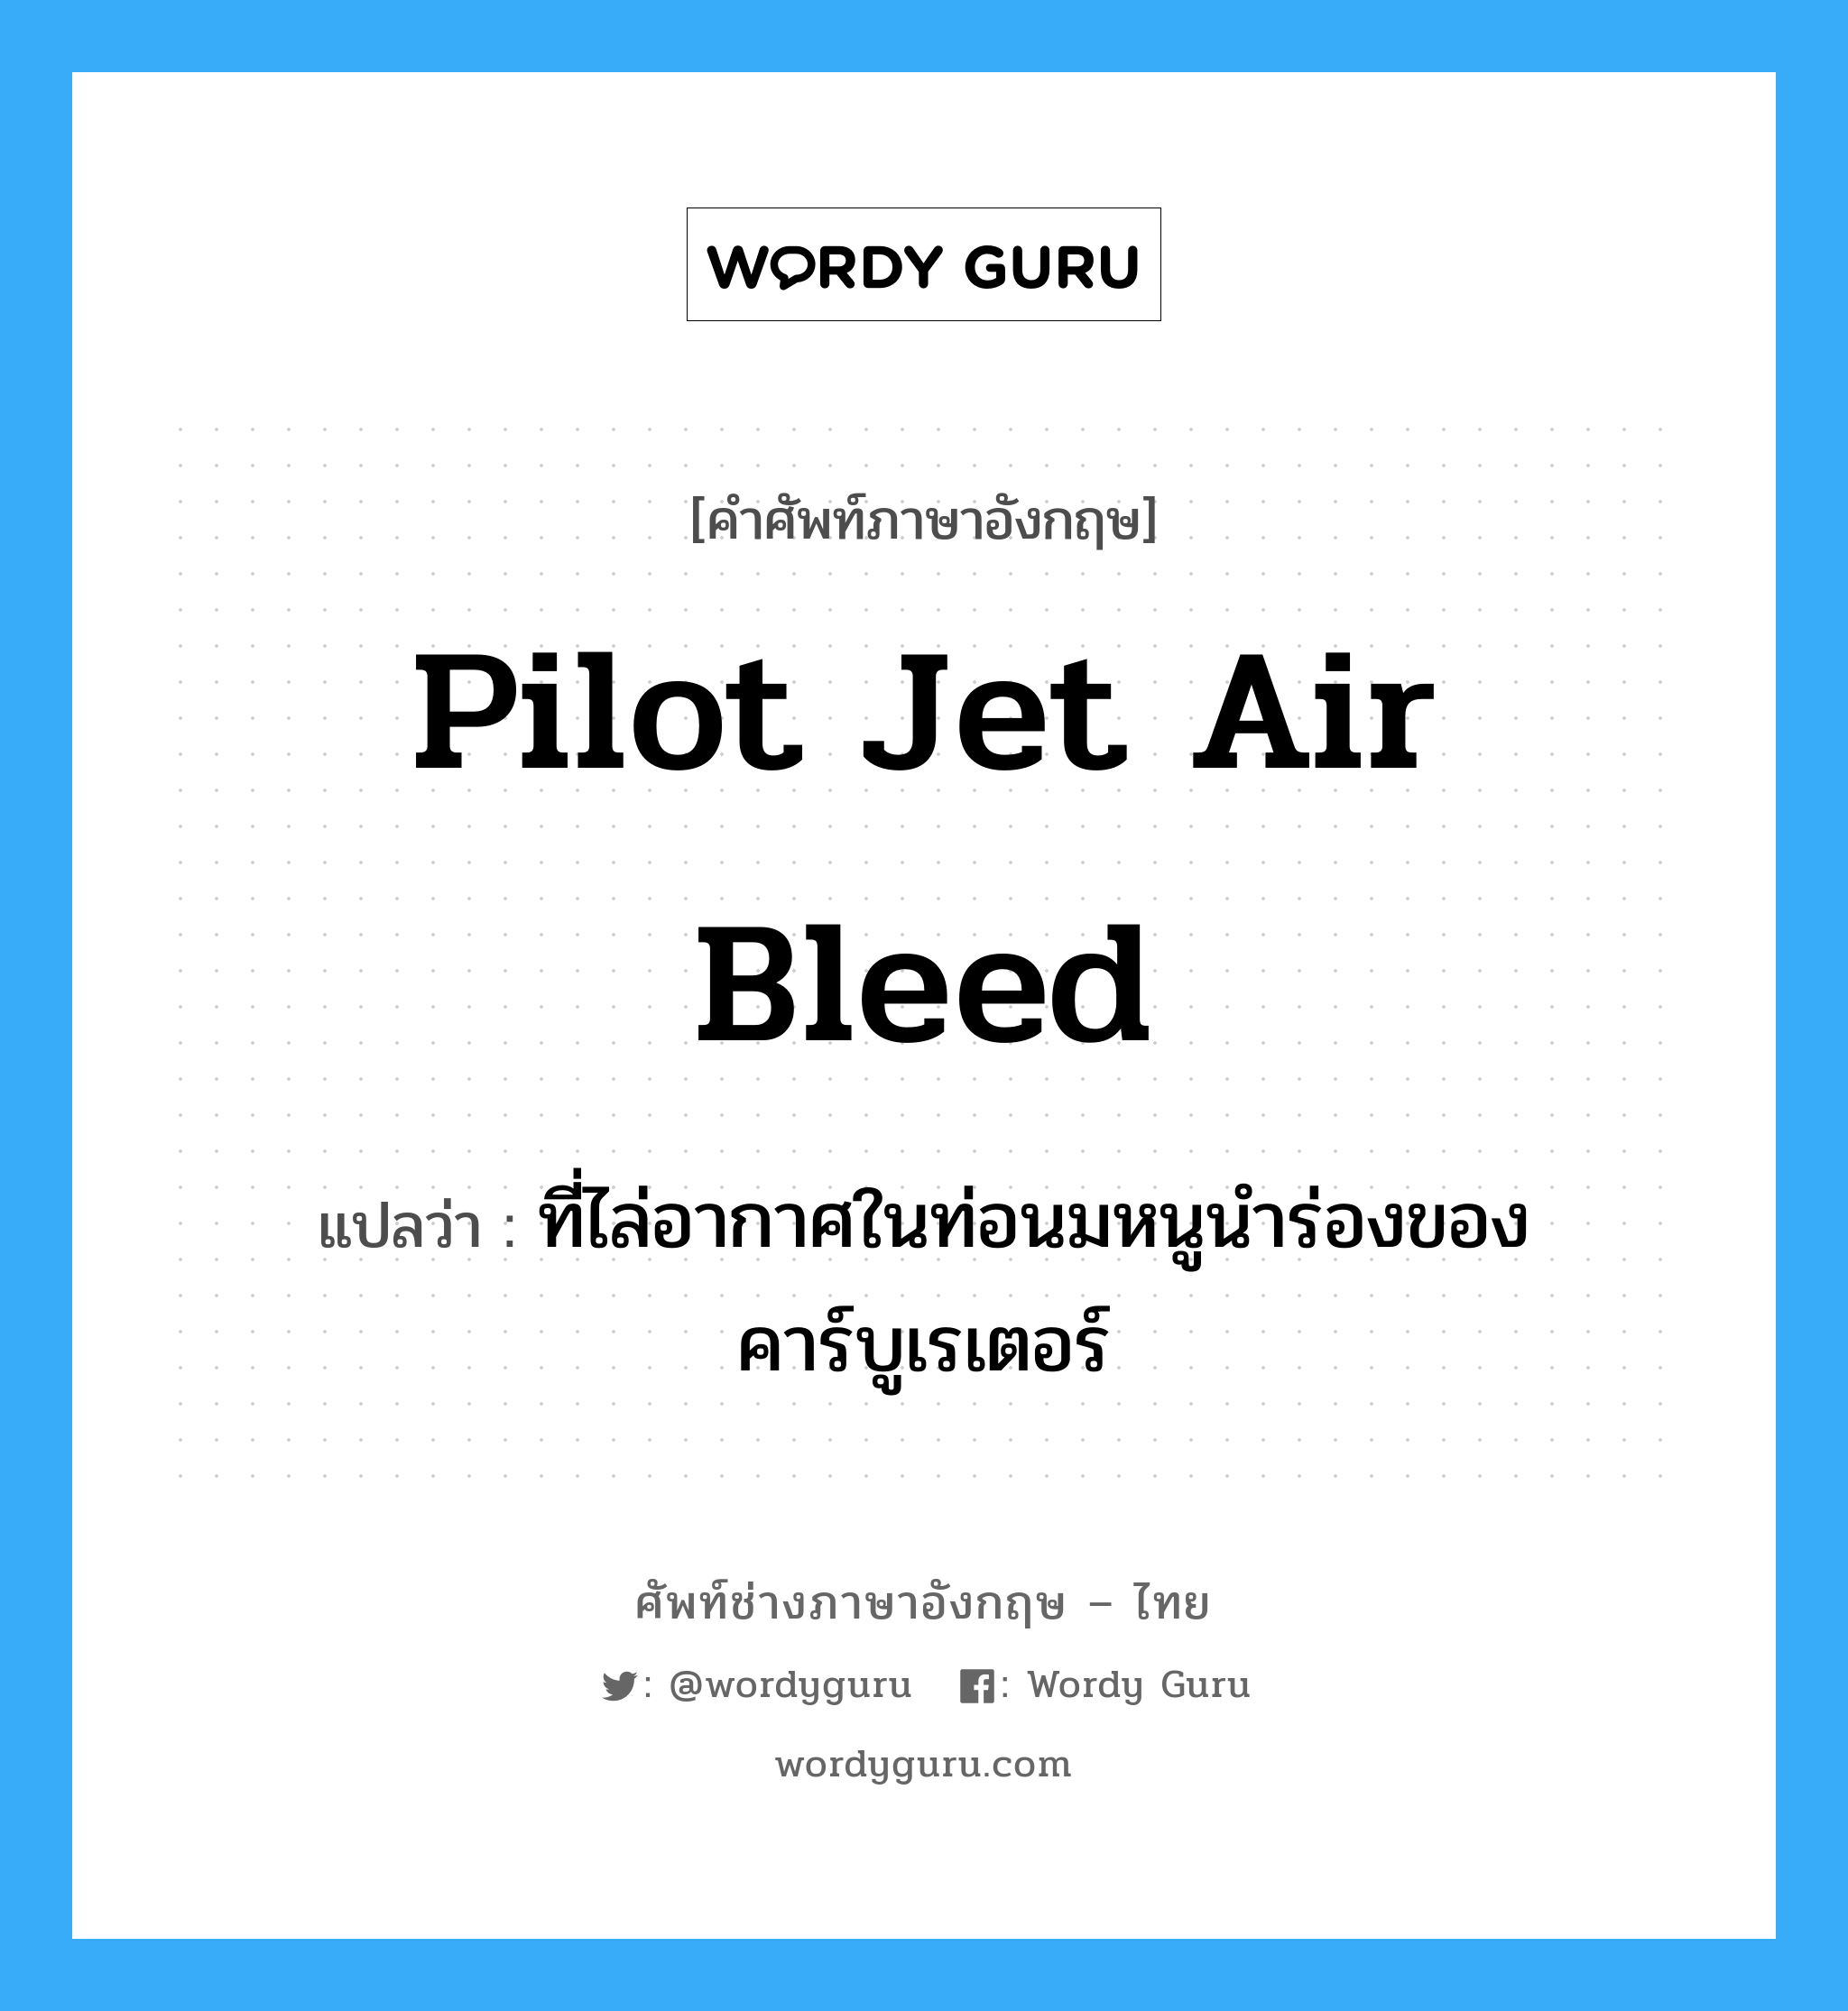 pilot jet air bleed แปลว่า?, คำศัพท์ช่างภาษาอังกฤษ - ไทย pilot jet air bleed คำศัพท์ภาษาอังกฤษ pilot jet air bleed แปลว่า ที่ไล่อากาศในท่อนมหนูนำร่องของคาร์บูเรเตอร์